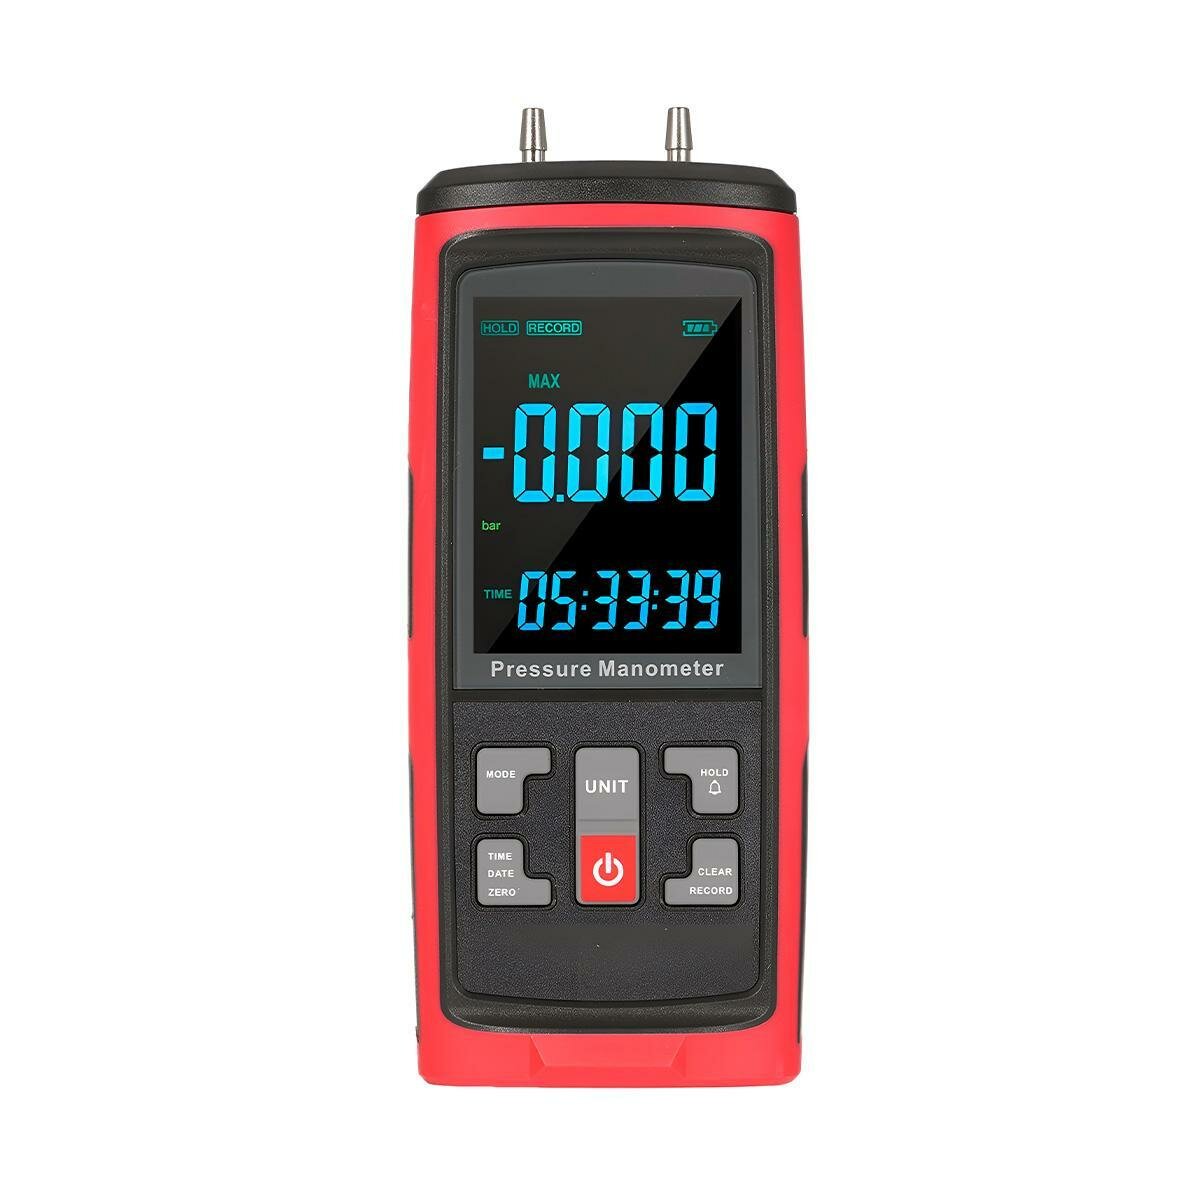 Манометр Hti-GT5101 (40KPA) (N52417DI) с ЖК-дисплеем и подсветкой - дифференциальный измеритель давления воздуха и давления газовых сред с записью и